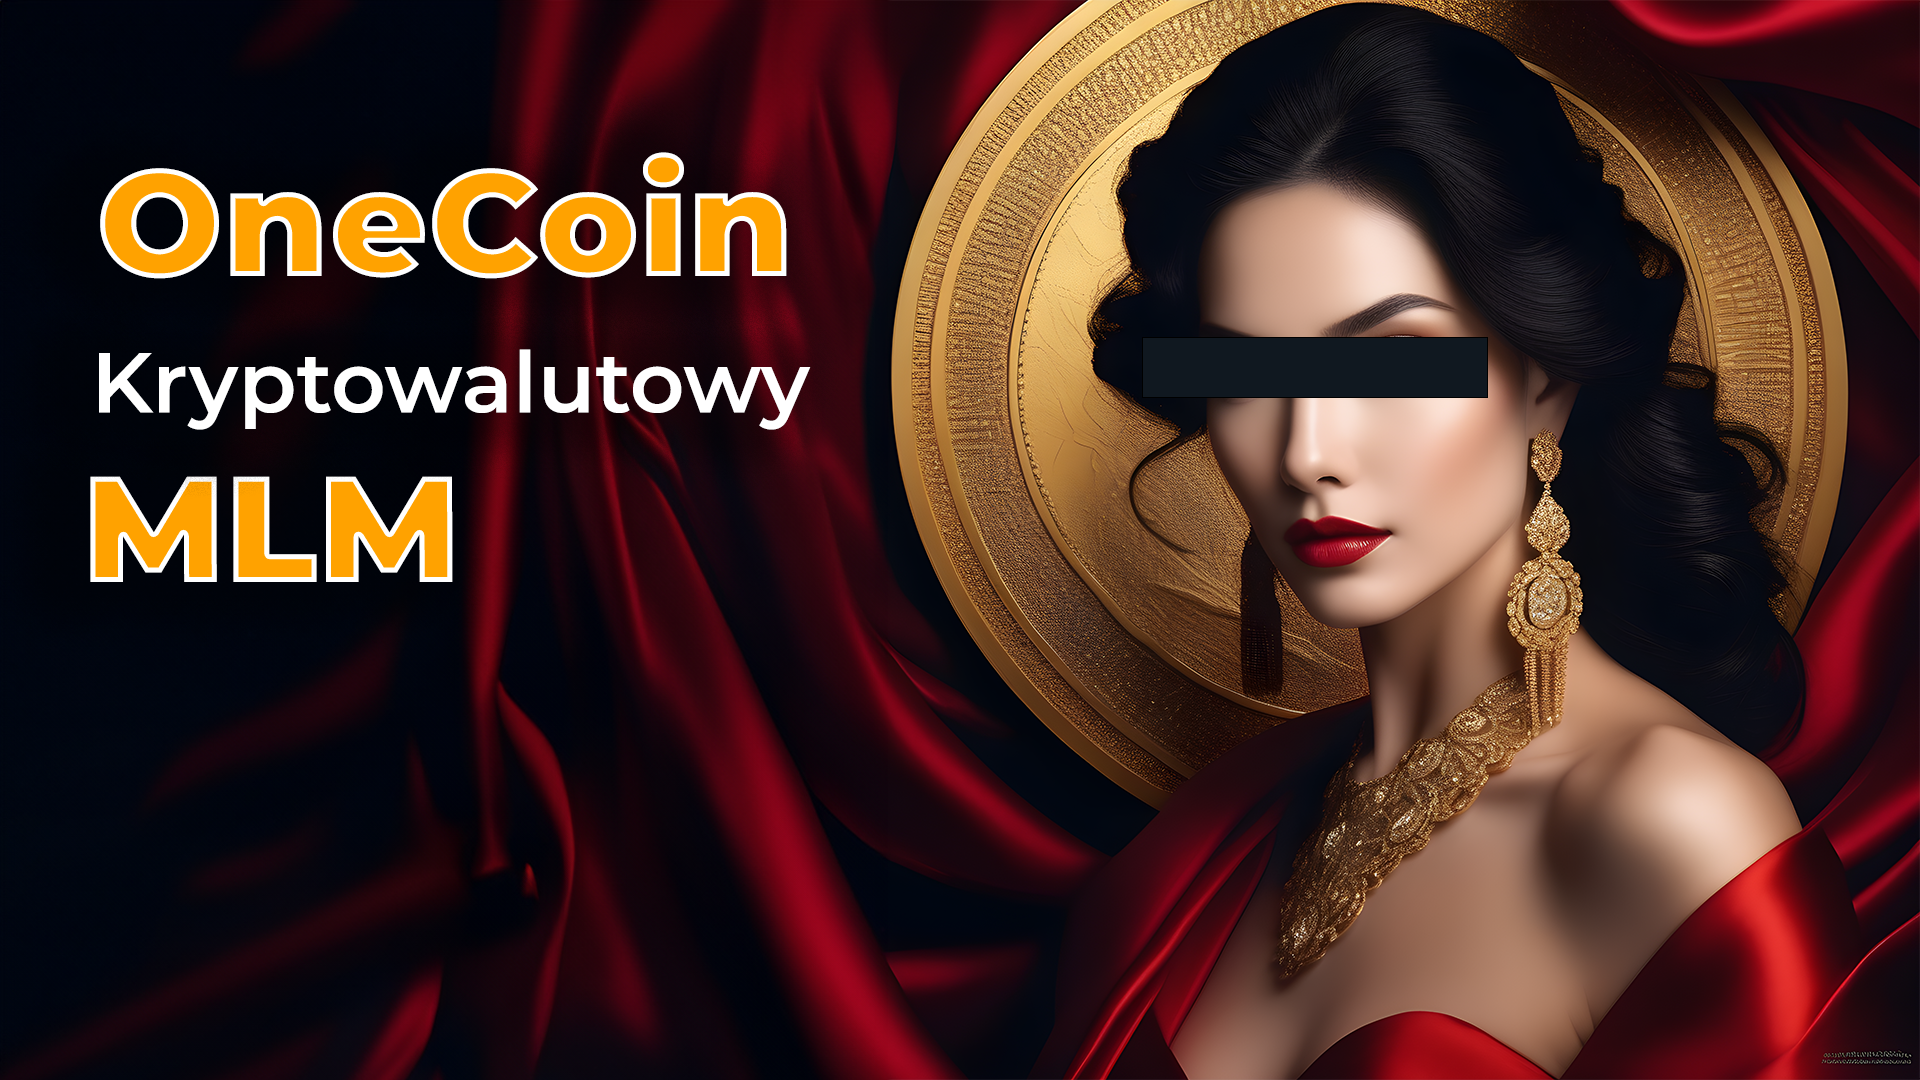 OneCoin, kryptowalutowy MLM i jego założycielka Ruja Ignatova